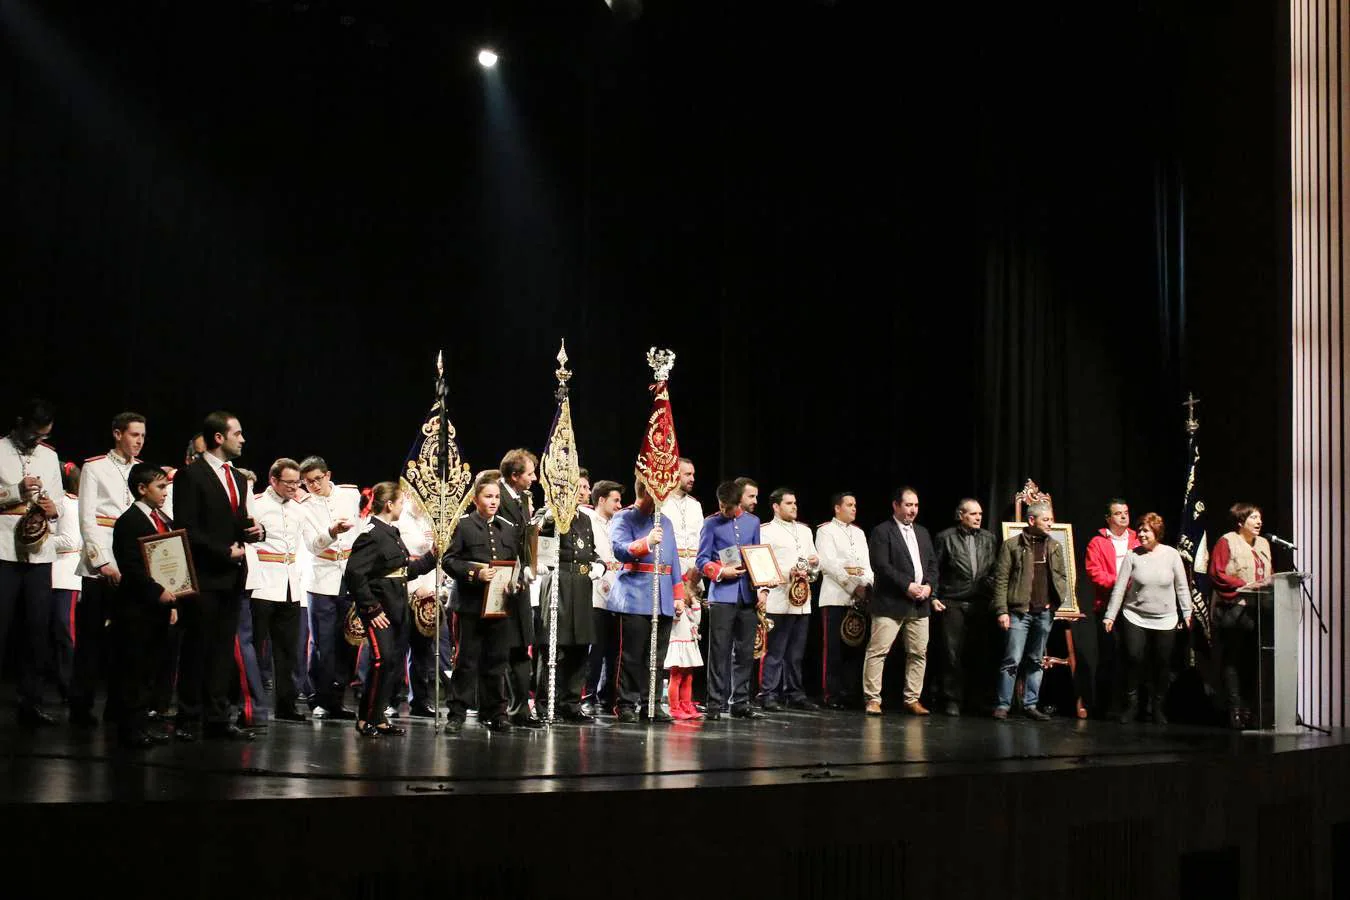 Miemnbros de las distintas bandas y agrupaciones junto a representantes de la Junta de Cofradías tras recoger un obsequio en agradecimiento a su participación en el Certamen.